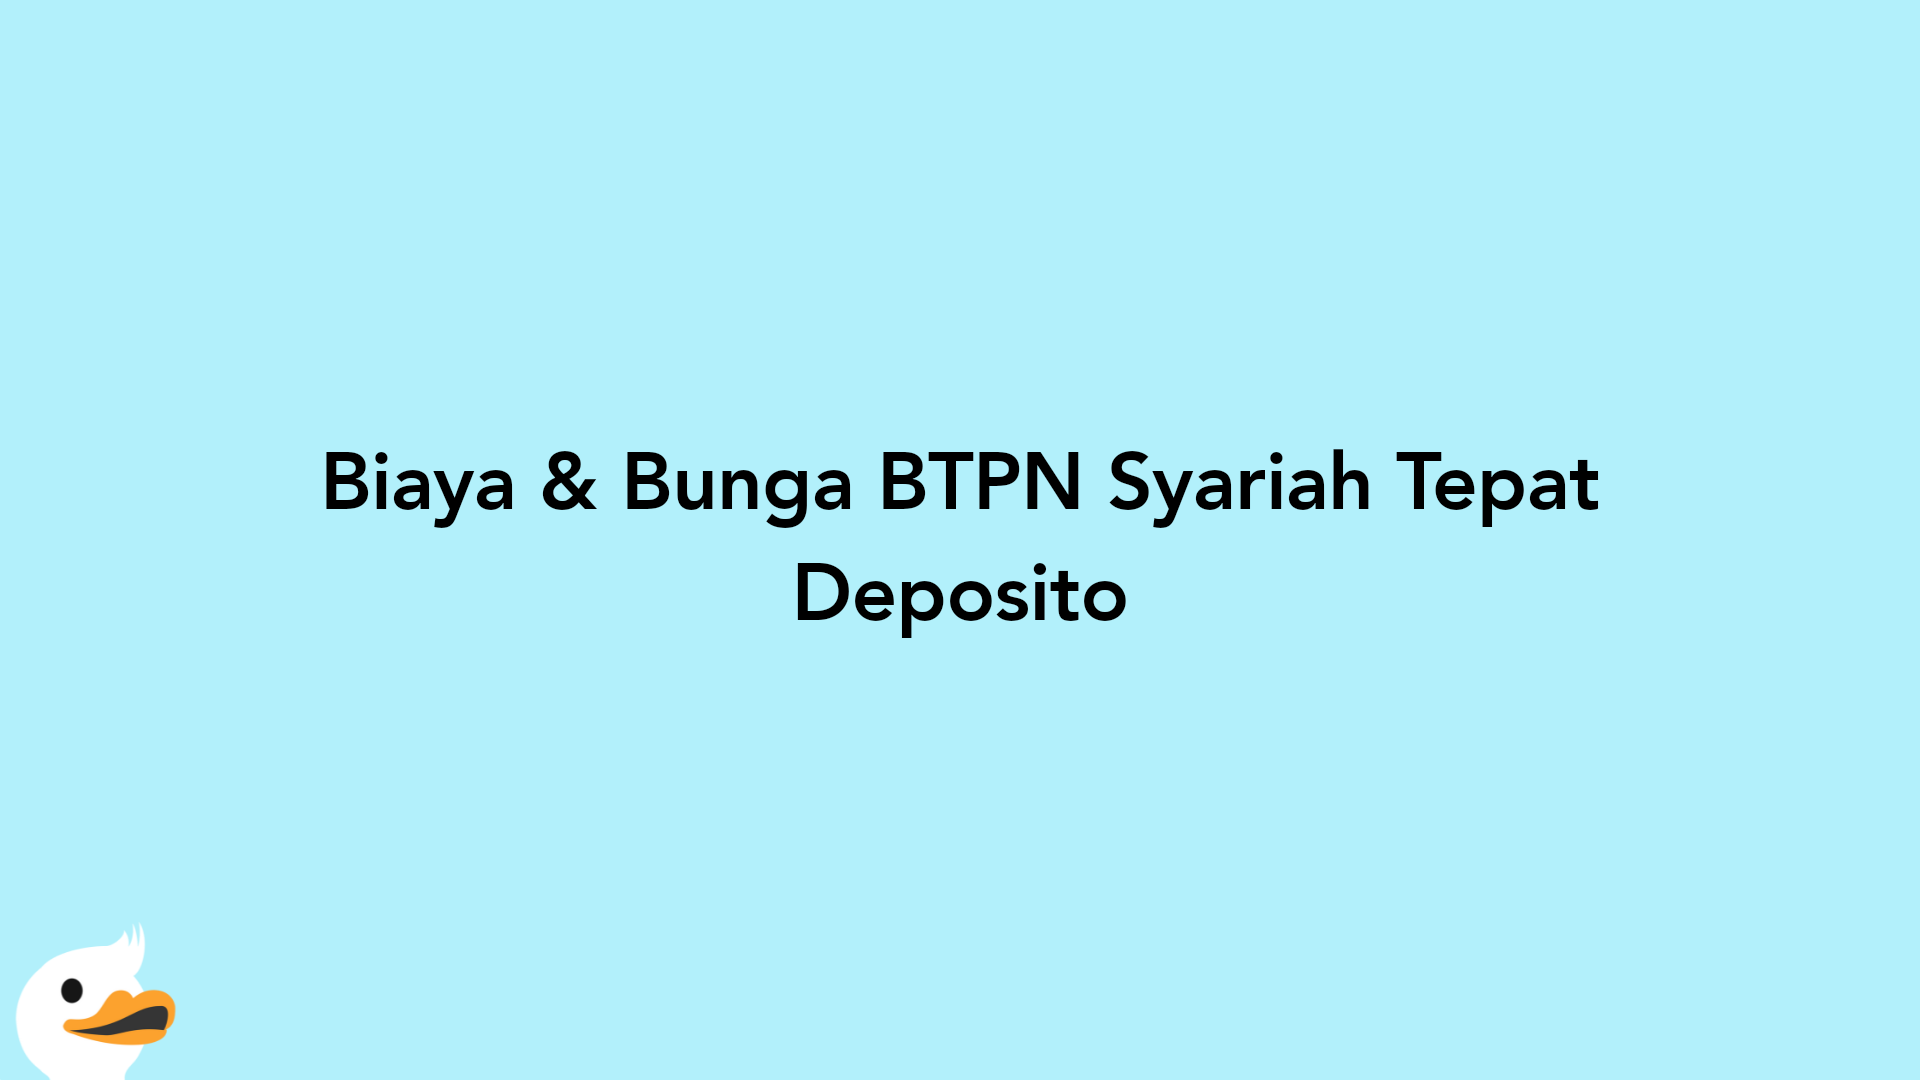 Biaya & Bunga BTPN Syariah Tepat Deposito